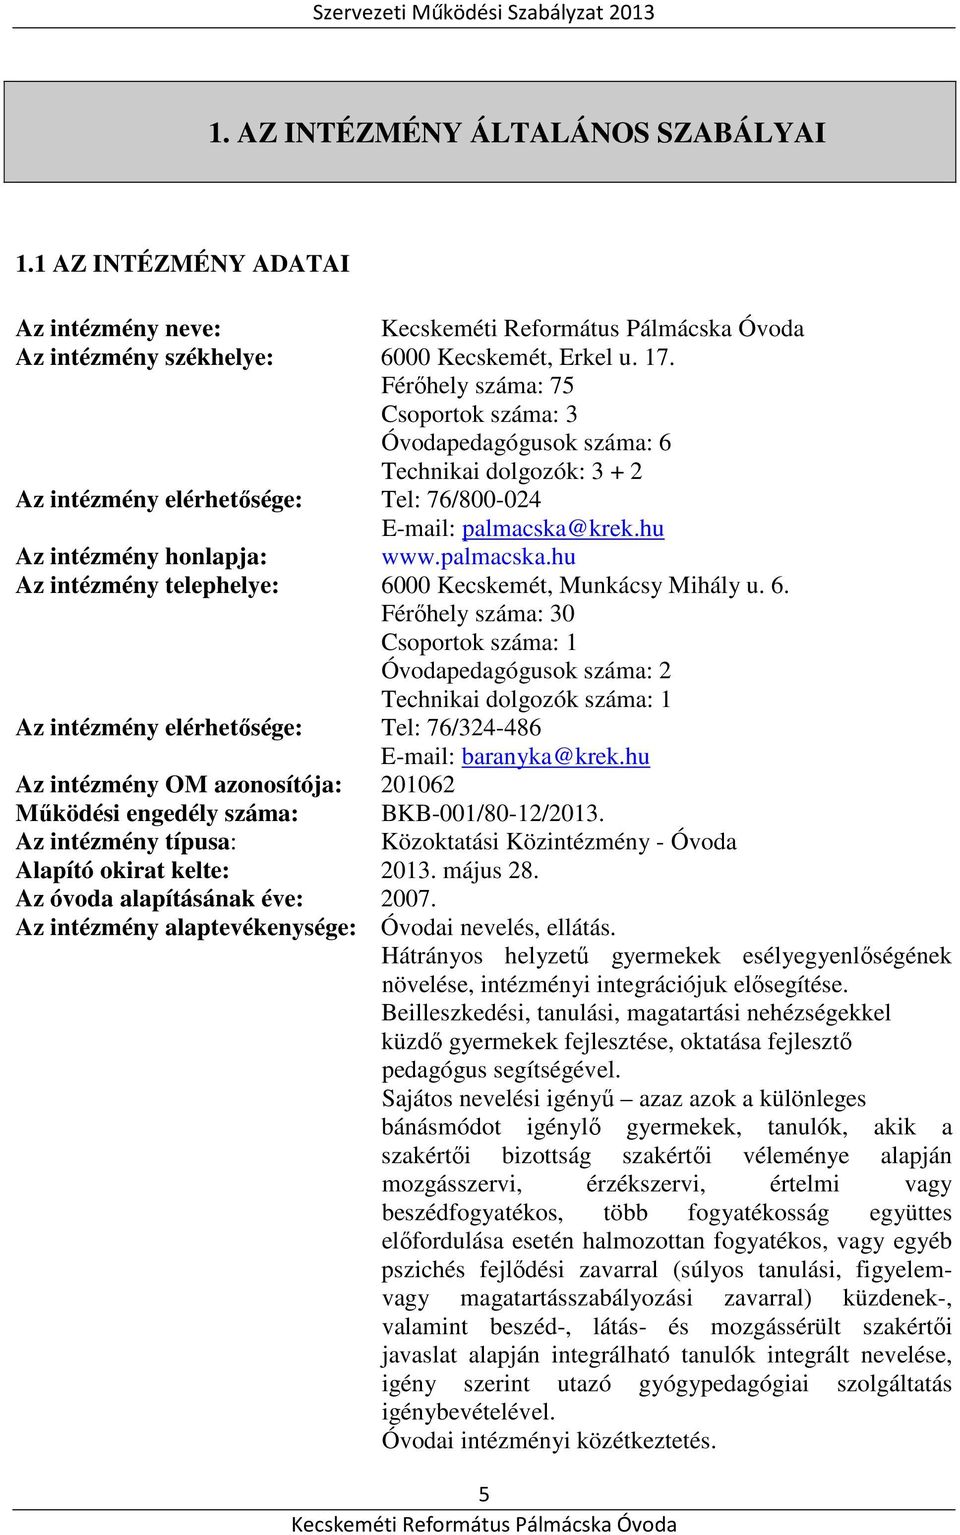 krek.hu Az intézmény honlapja: www.palmacska.hu Az intézmény telephelye: 60